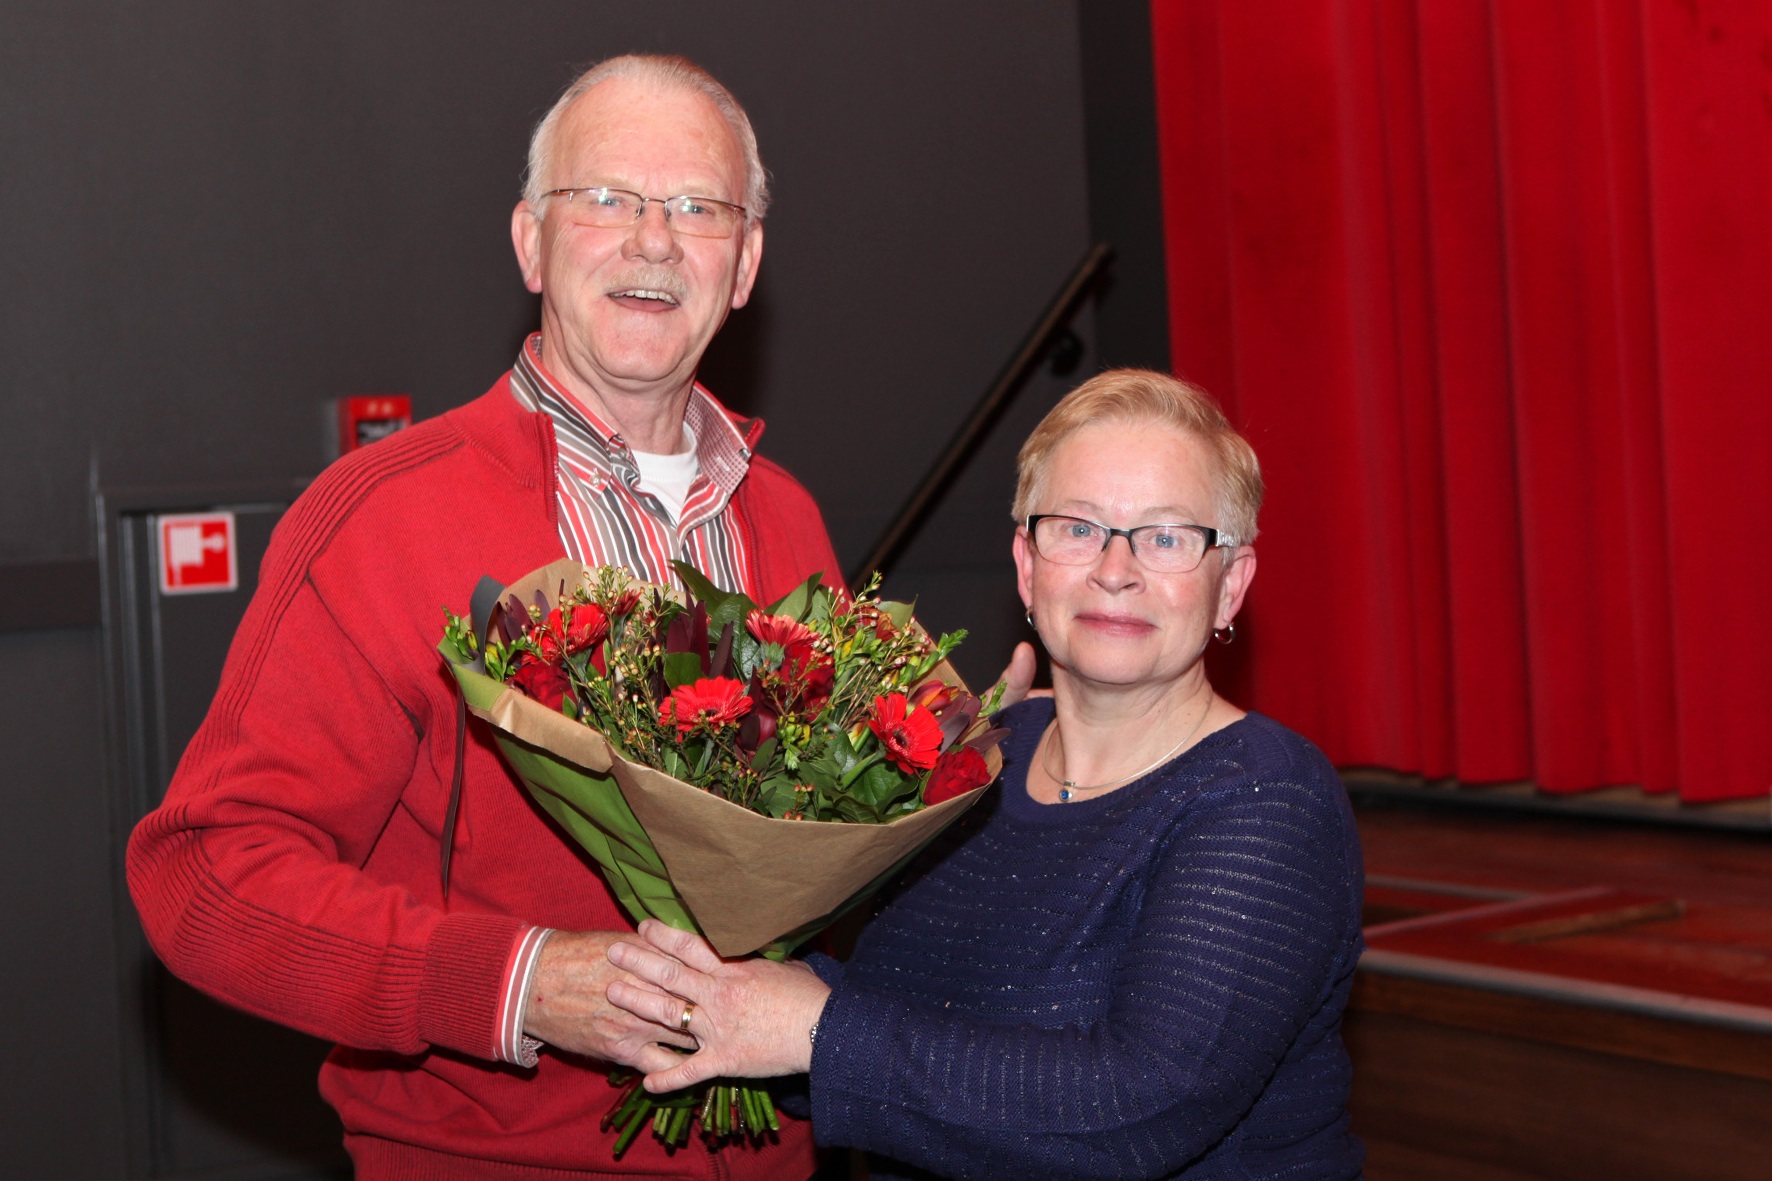 Els van Oosterhout, het 1401-ste lid van SV-Rijen, krijgt en bloemetje van de voorzitter.